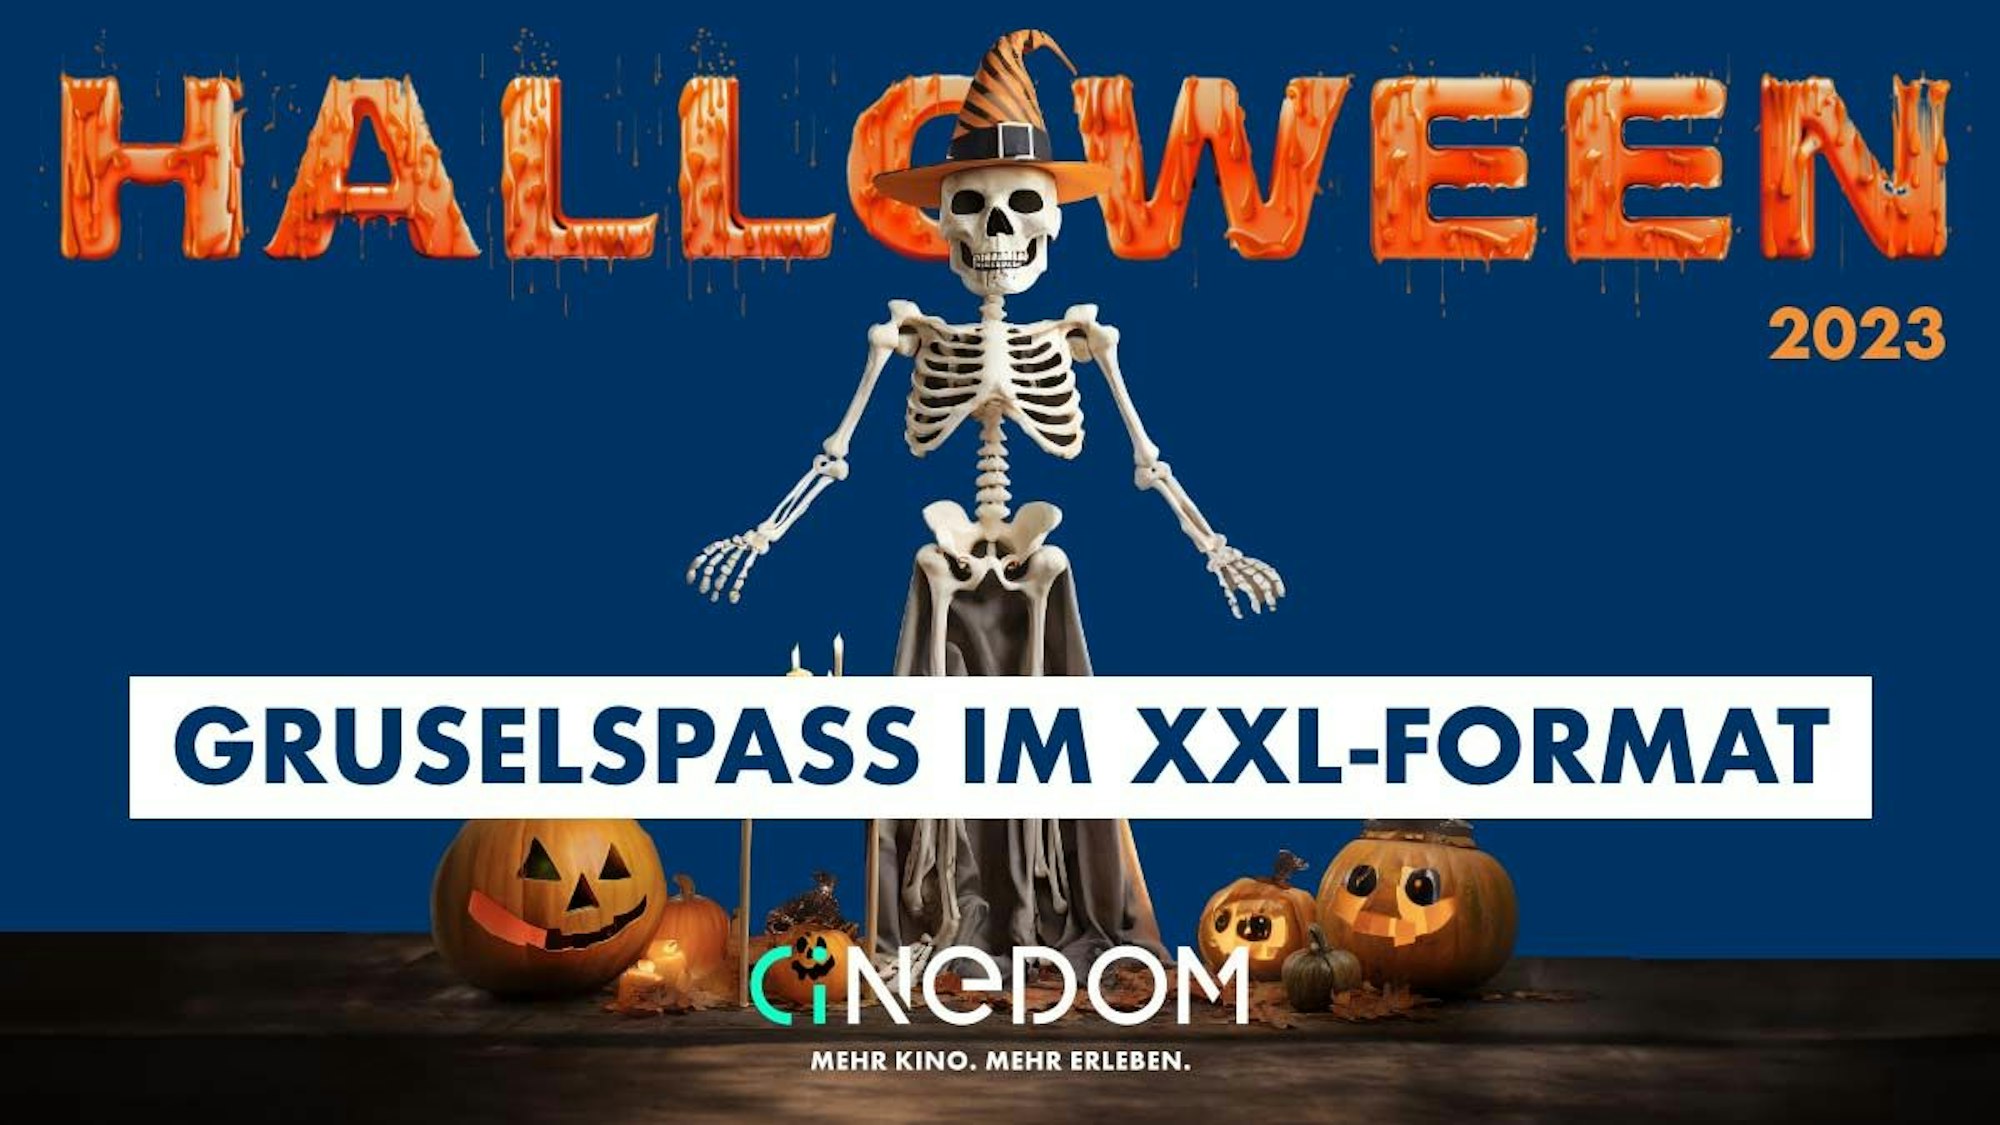 Gruselspaß im XXL-Format ist im Cinedom zu Halloween garantiert.Gruselspaß im XXL-Format ist im Cinedom zu Halloween garantiert. 